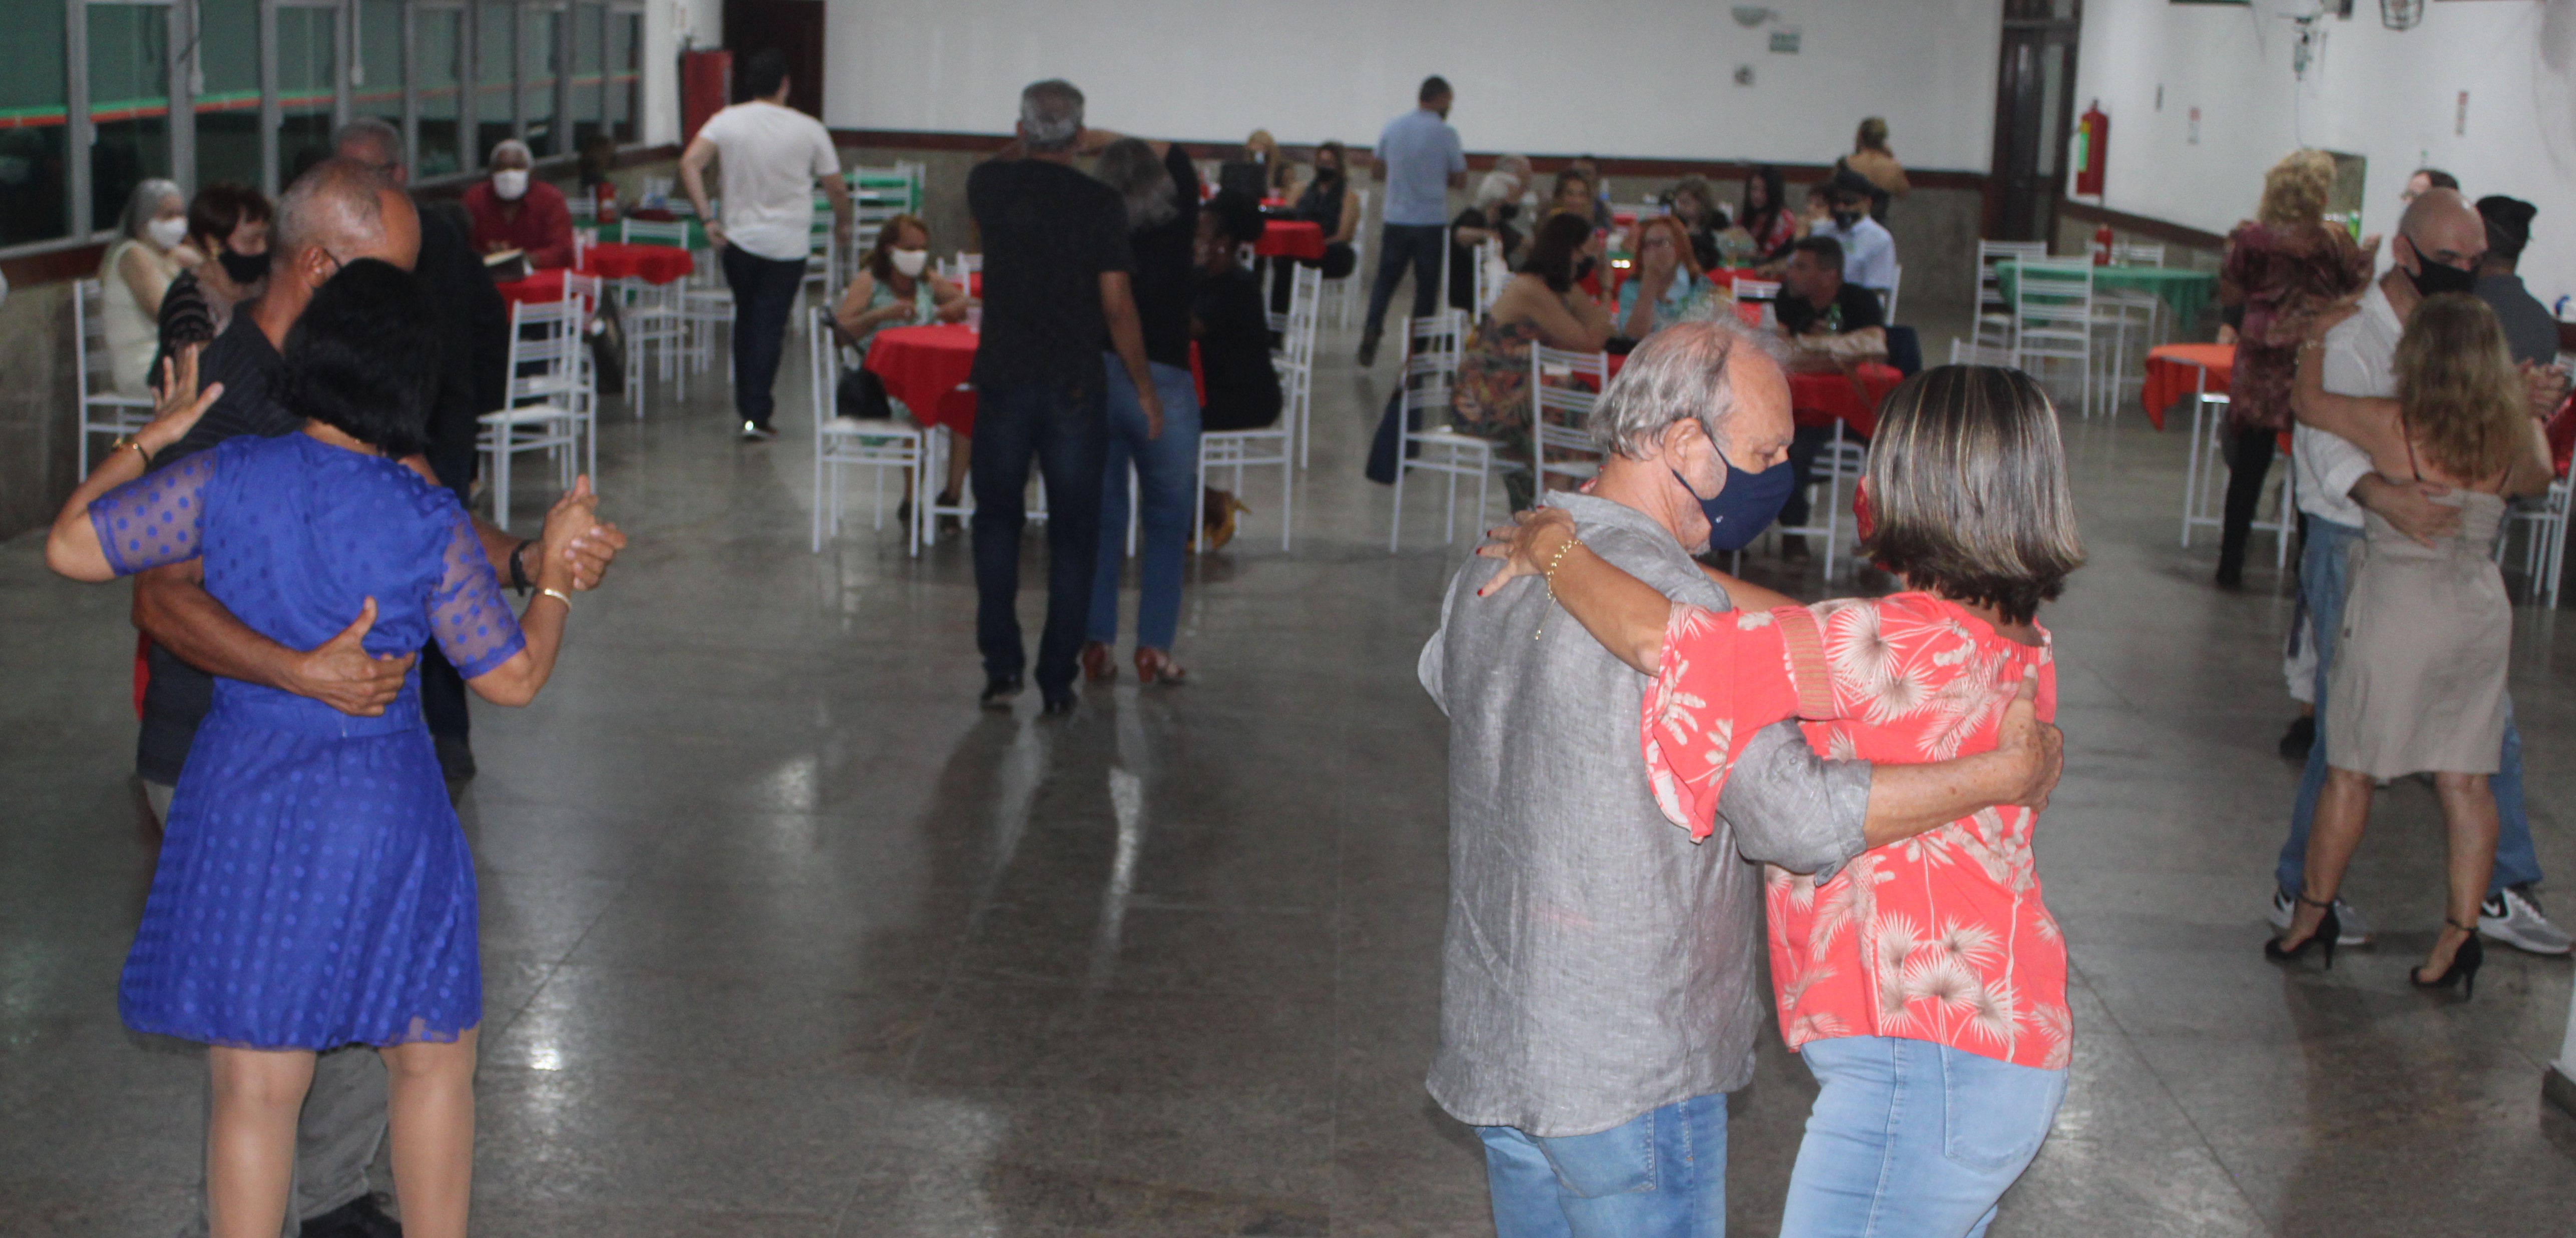 O tradicional Baile da Lusa, que acontece no clube há 30 anos, reúne público de todas as idades